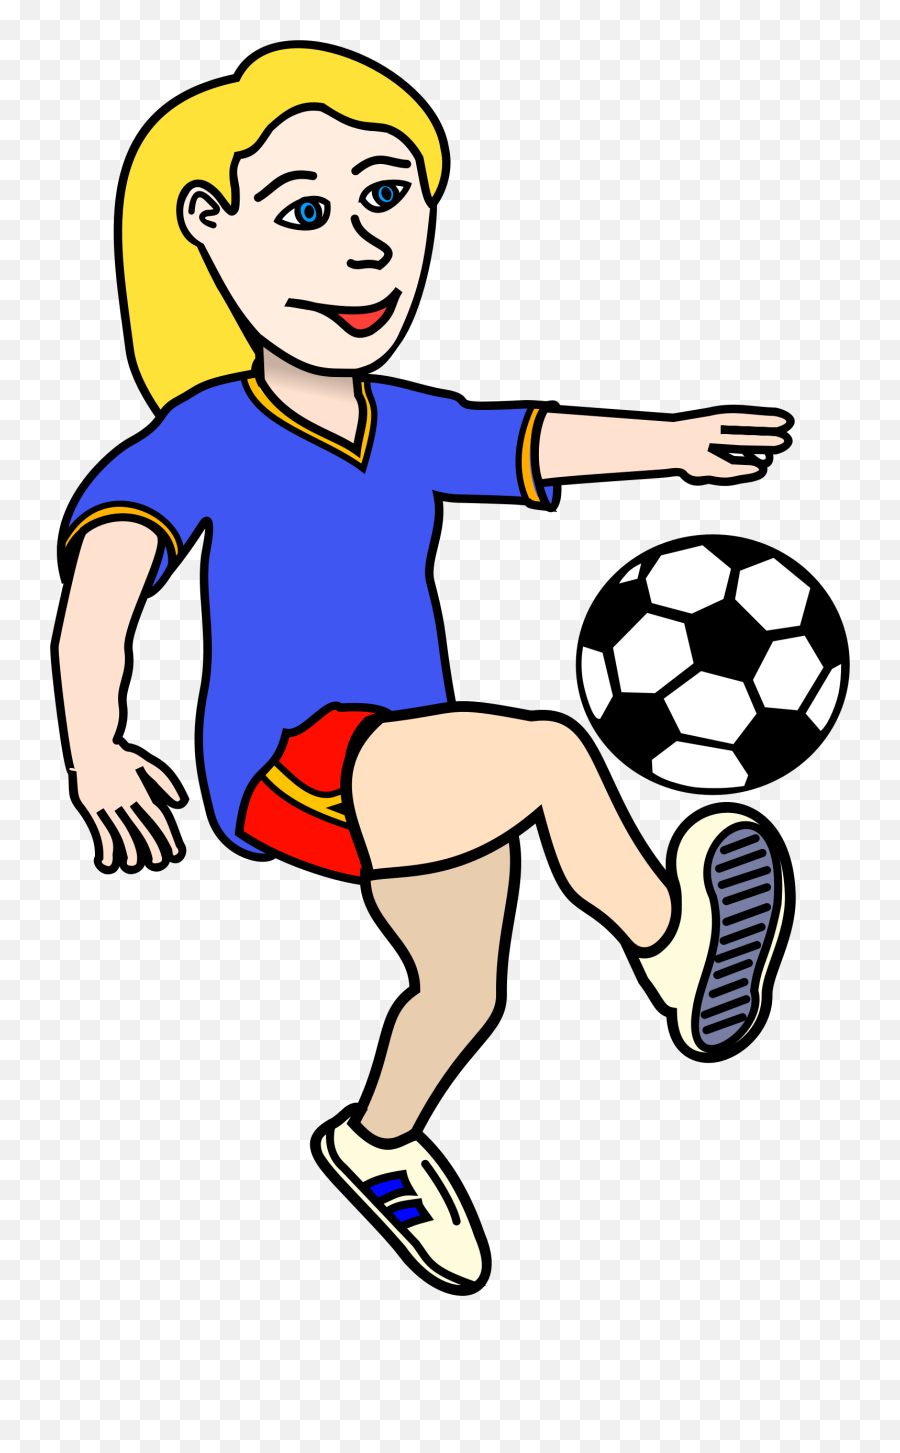 Free Soccer Clip Art - Soccer Ball Clip Art Emoji,Football Clipart